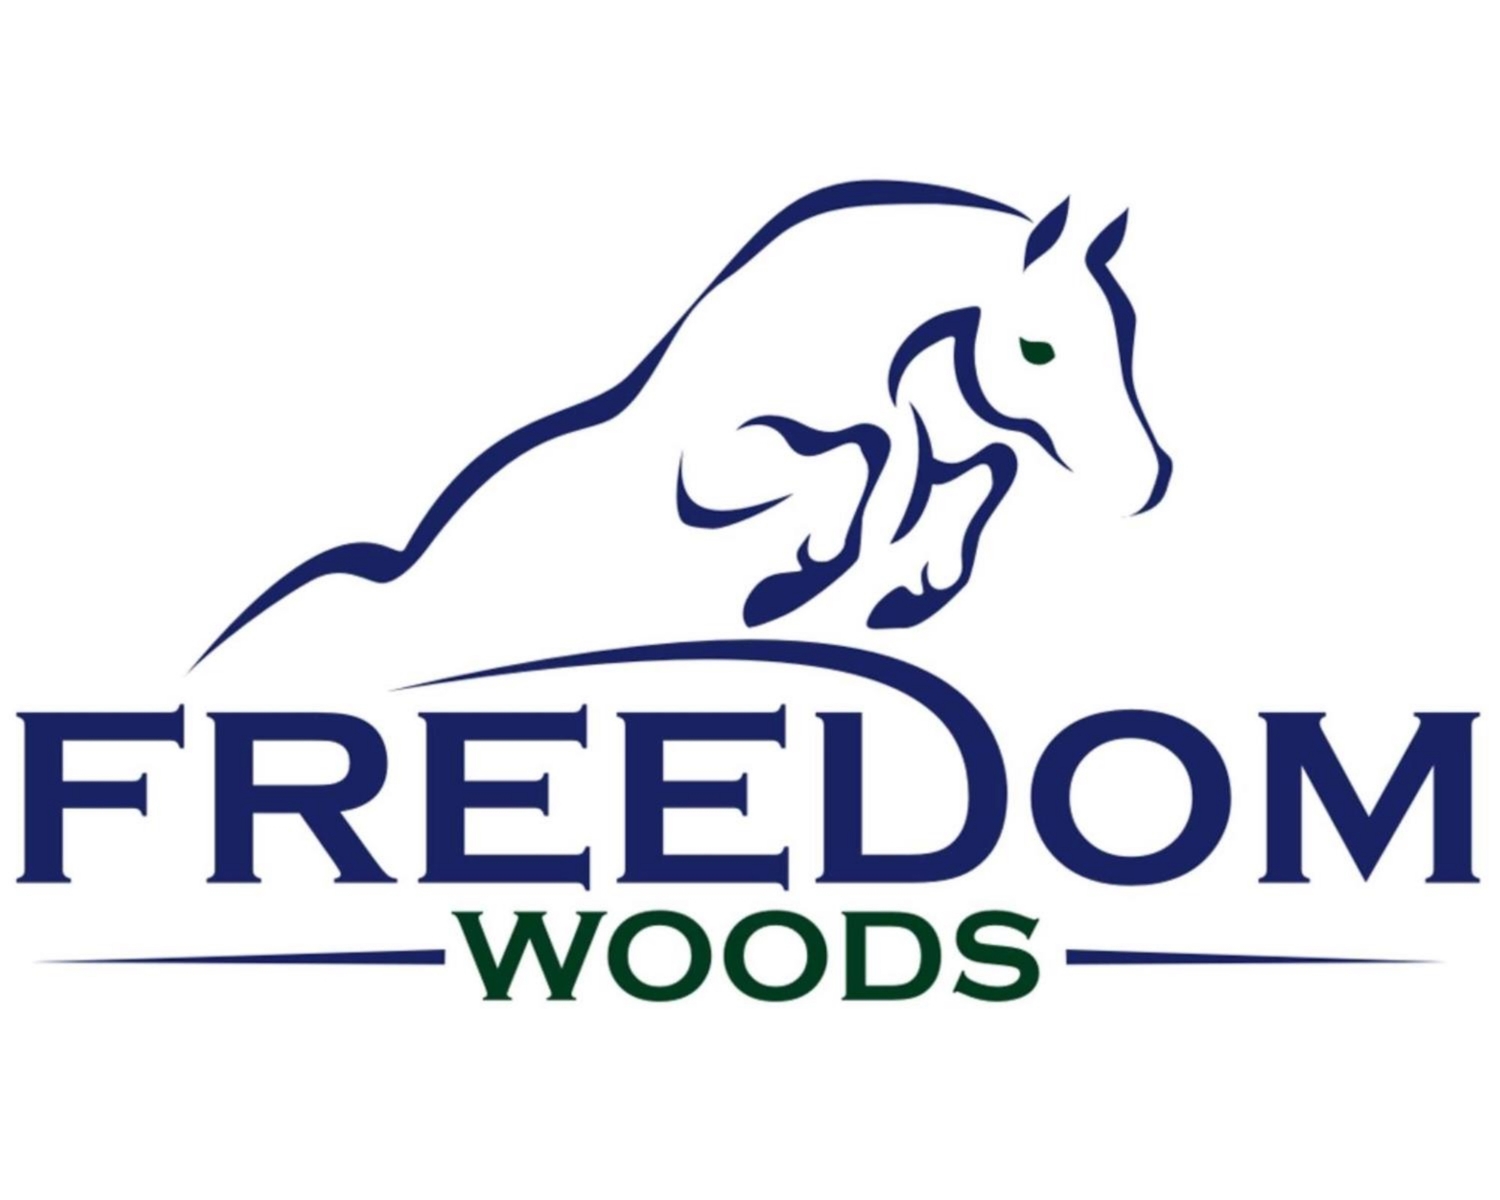 Freedom Woods